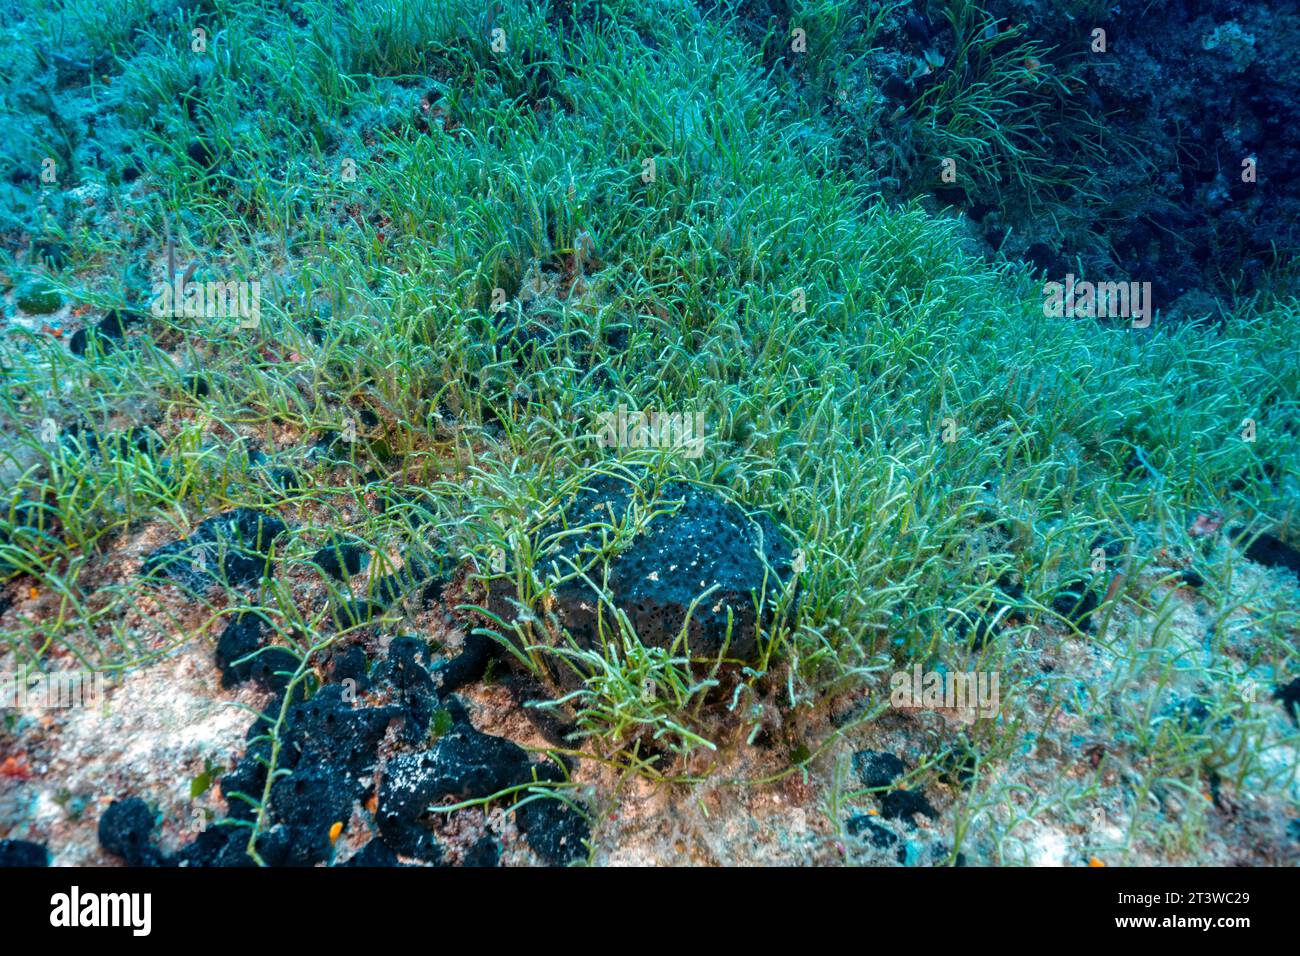 Alga verde invasiva, Caulerpa resemosa lamourouxii F. requienii, che copre l'habitat coralligeno nella baia di Fethiye in Turchia. Foto Stock